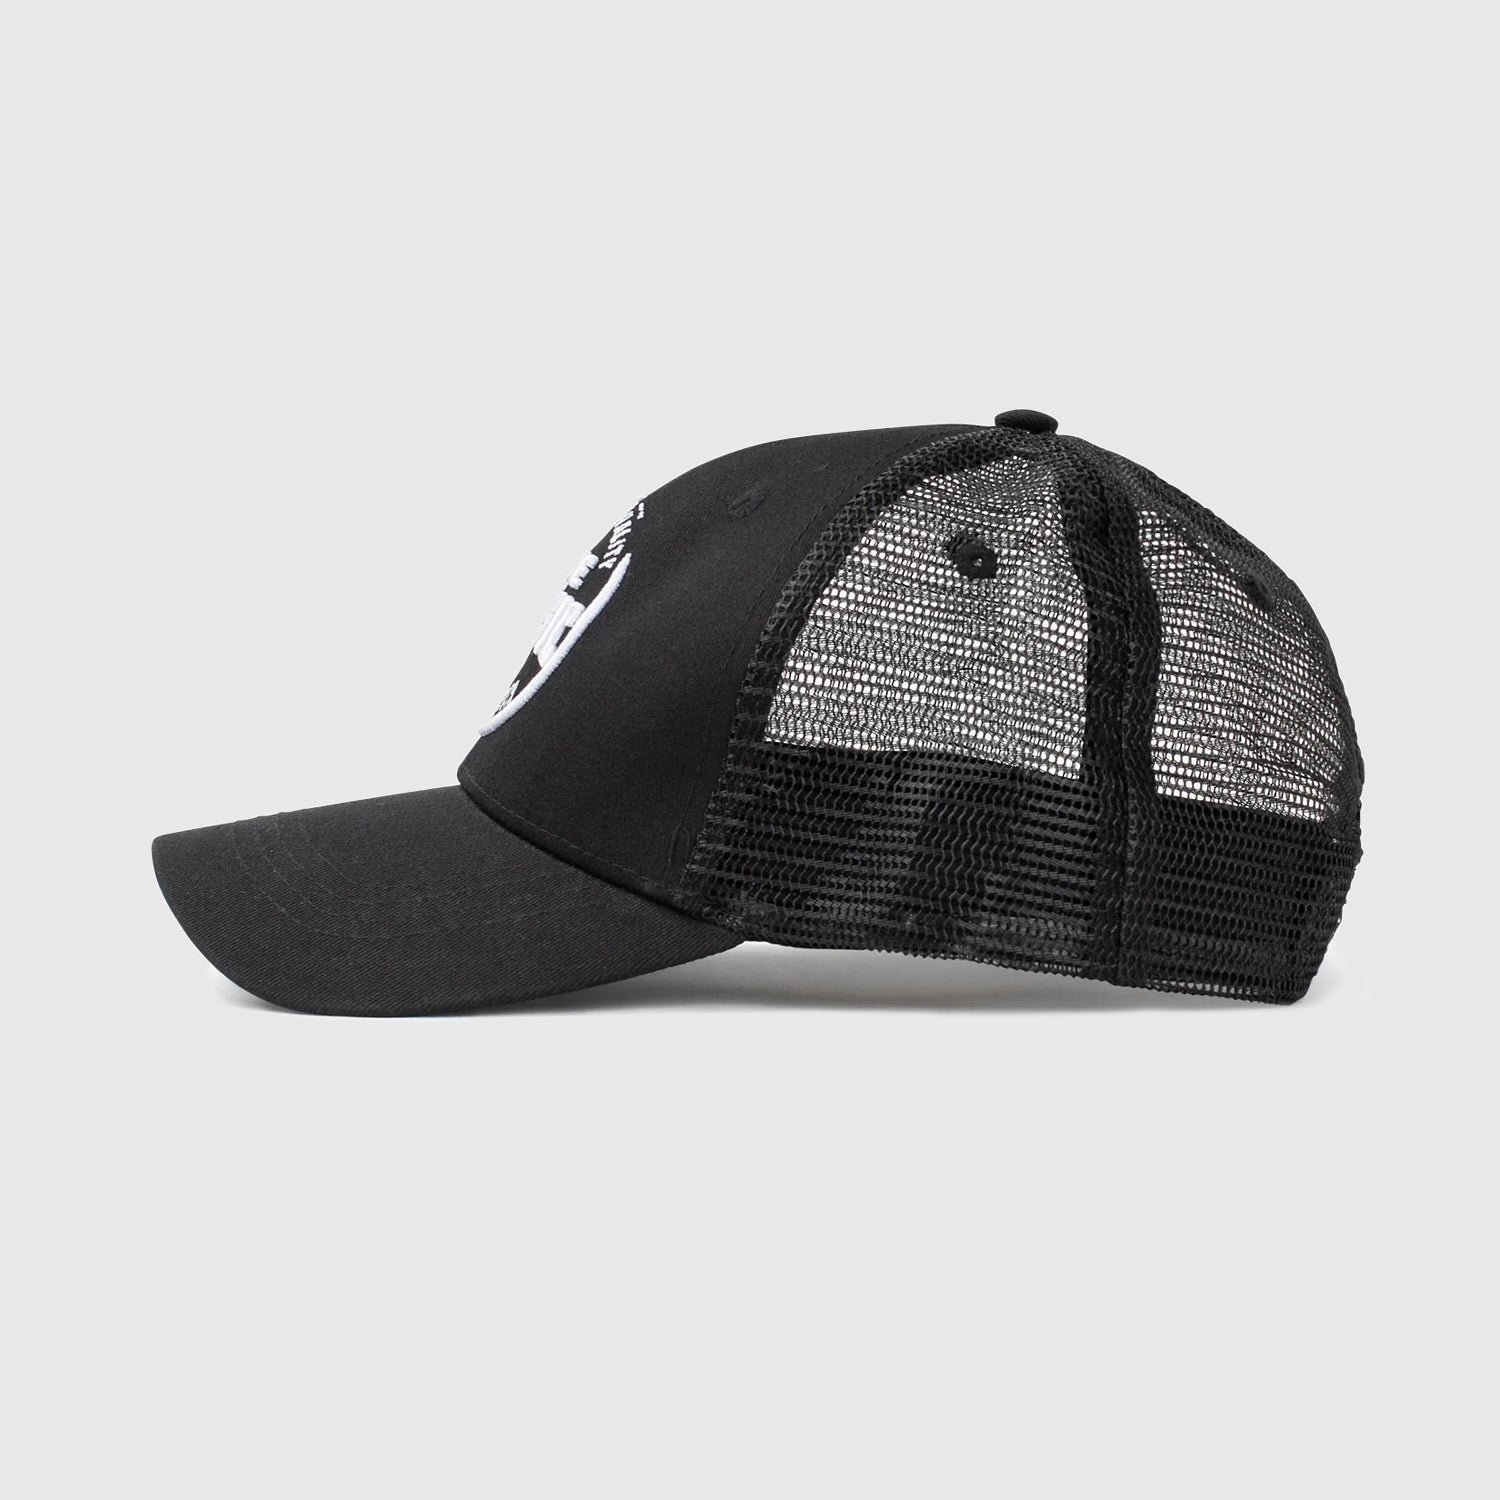 Black True Classic Trucker Hat